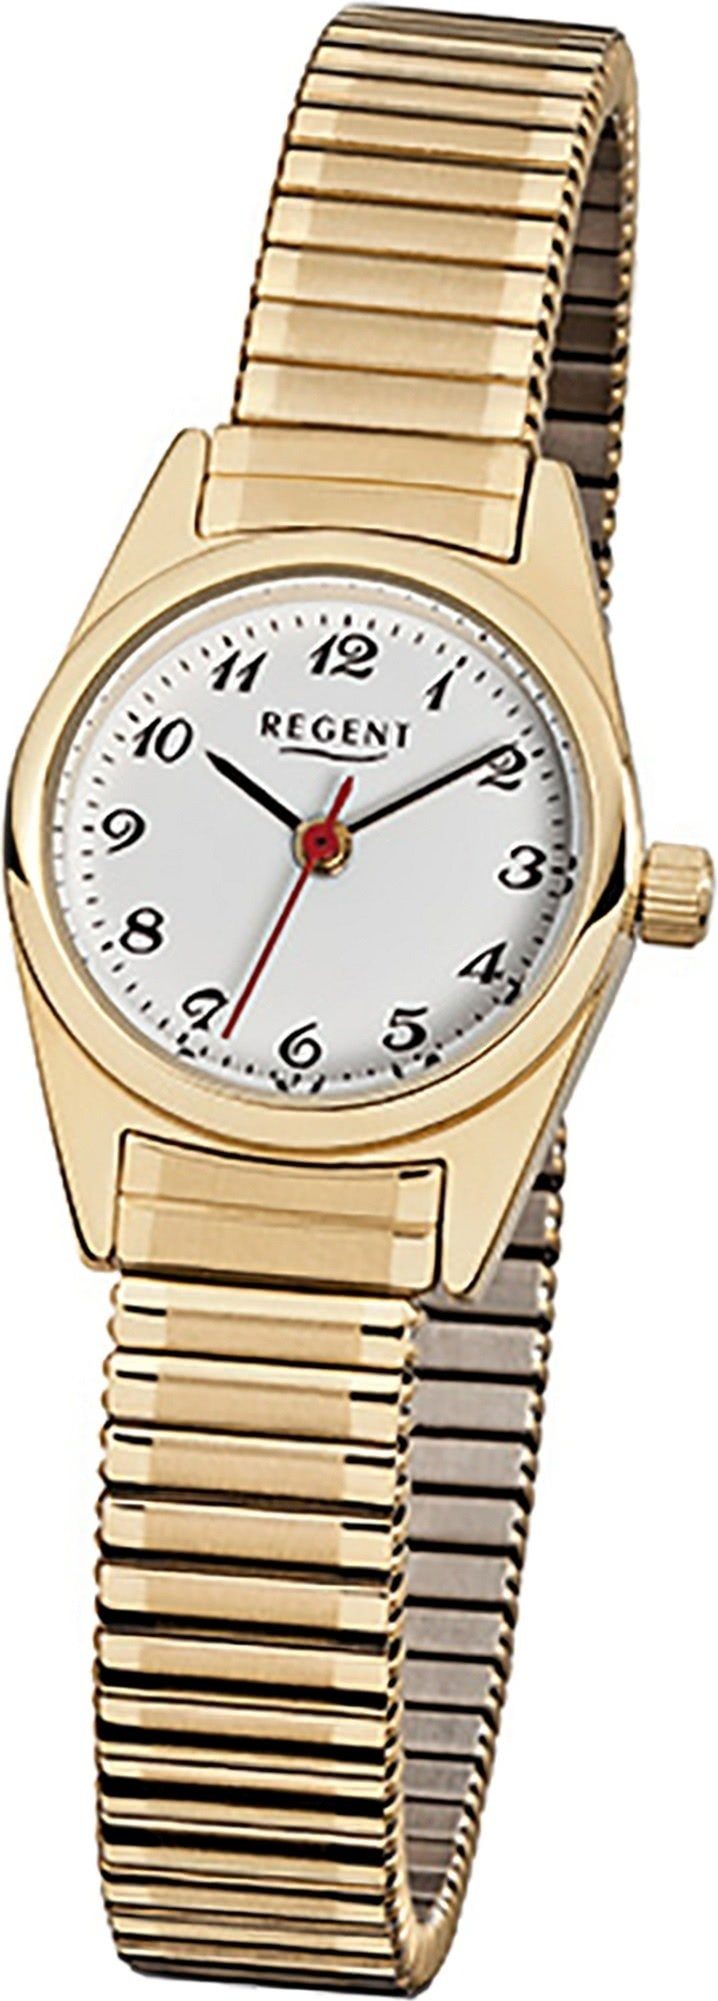 Regent Quarzuhr Regent Stahl Damen Uhr F-271 Quarzuhr, Damenuhr Edelstahl, ionenplattiert rundes Gehäuse, klein (ca. 22mm) | Quarzuhren